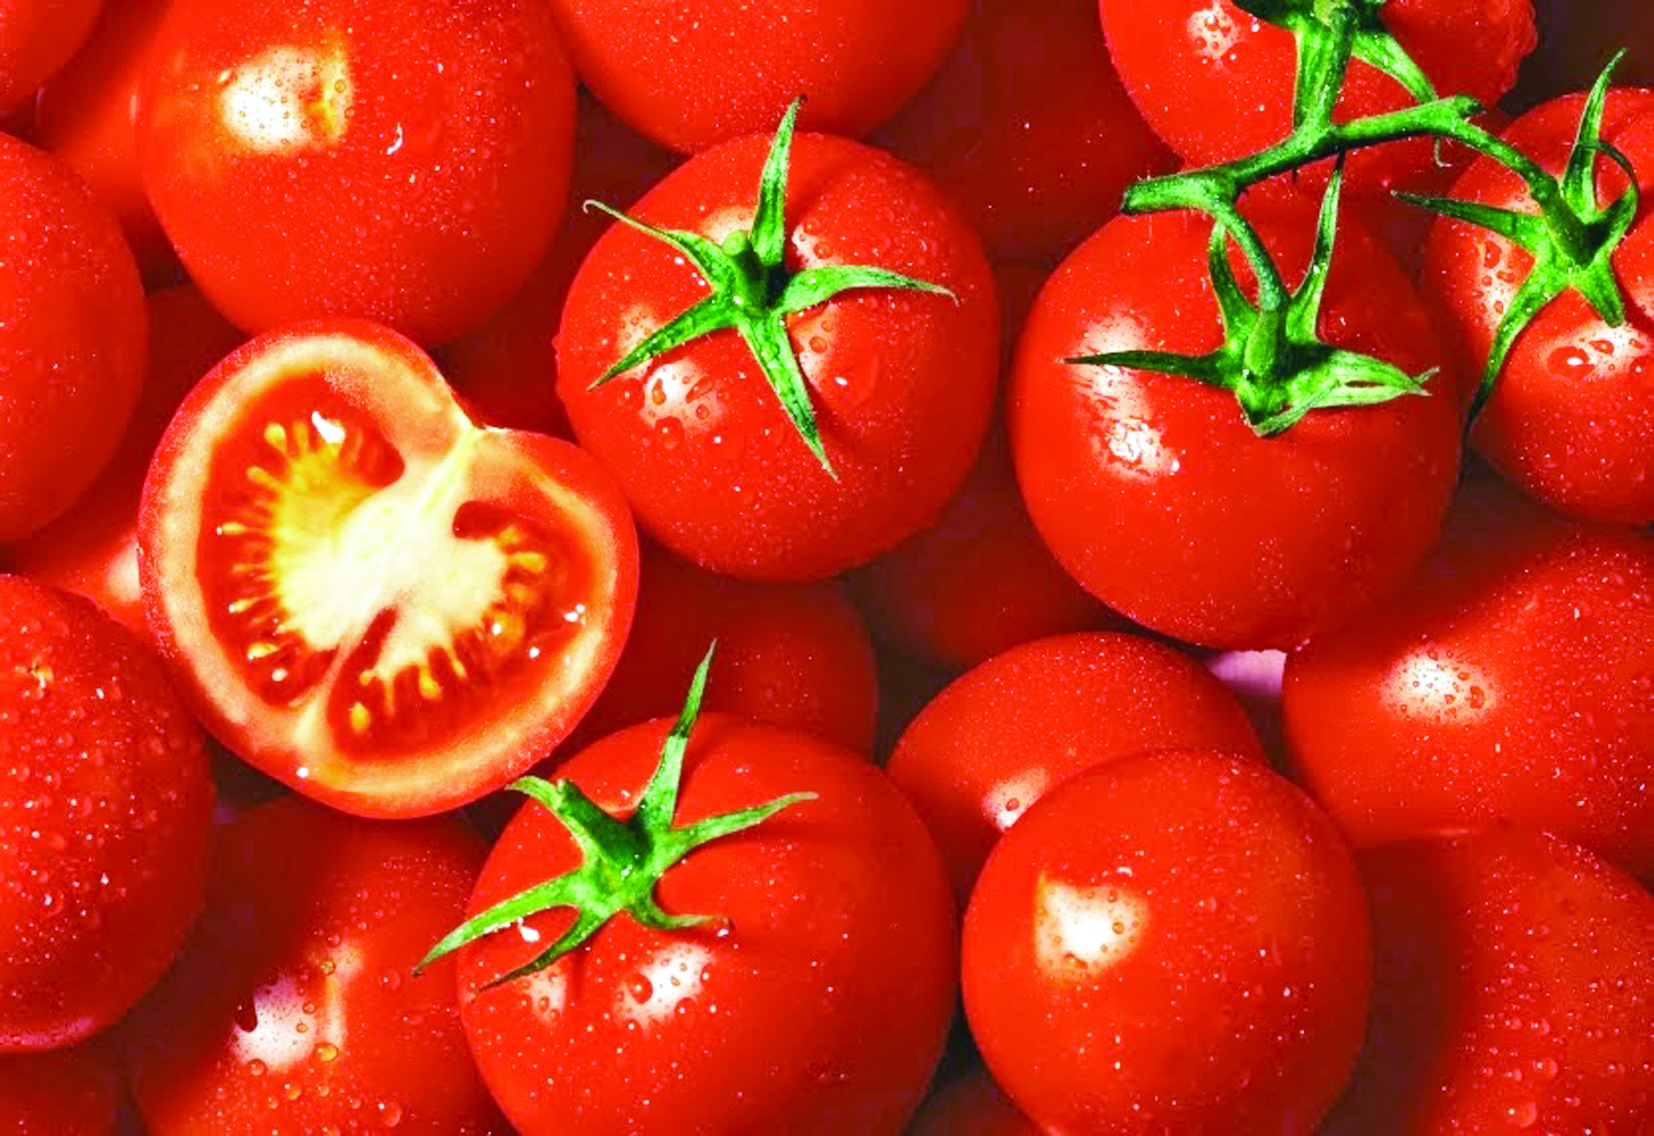 الطماطم تساعد على الحد من أمراض القلب